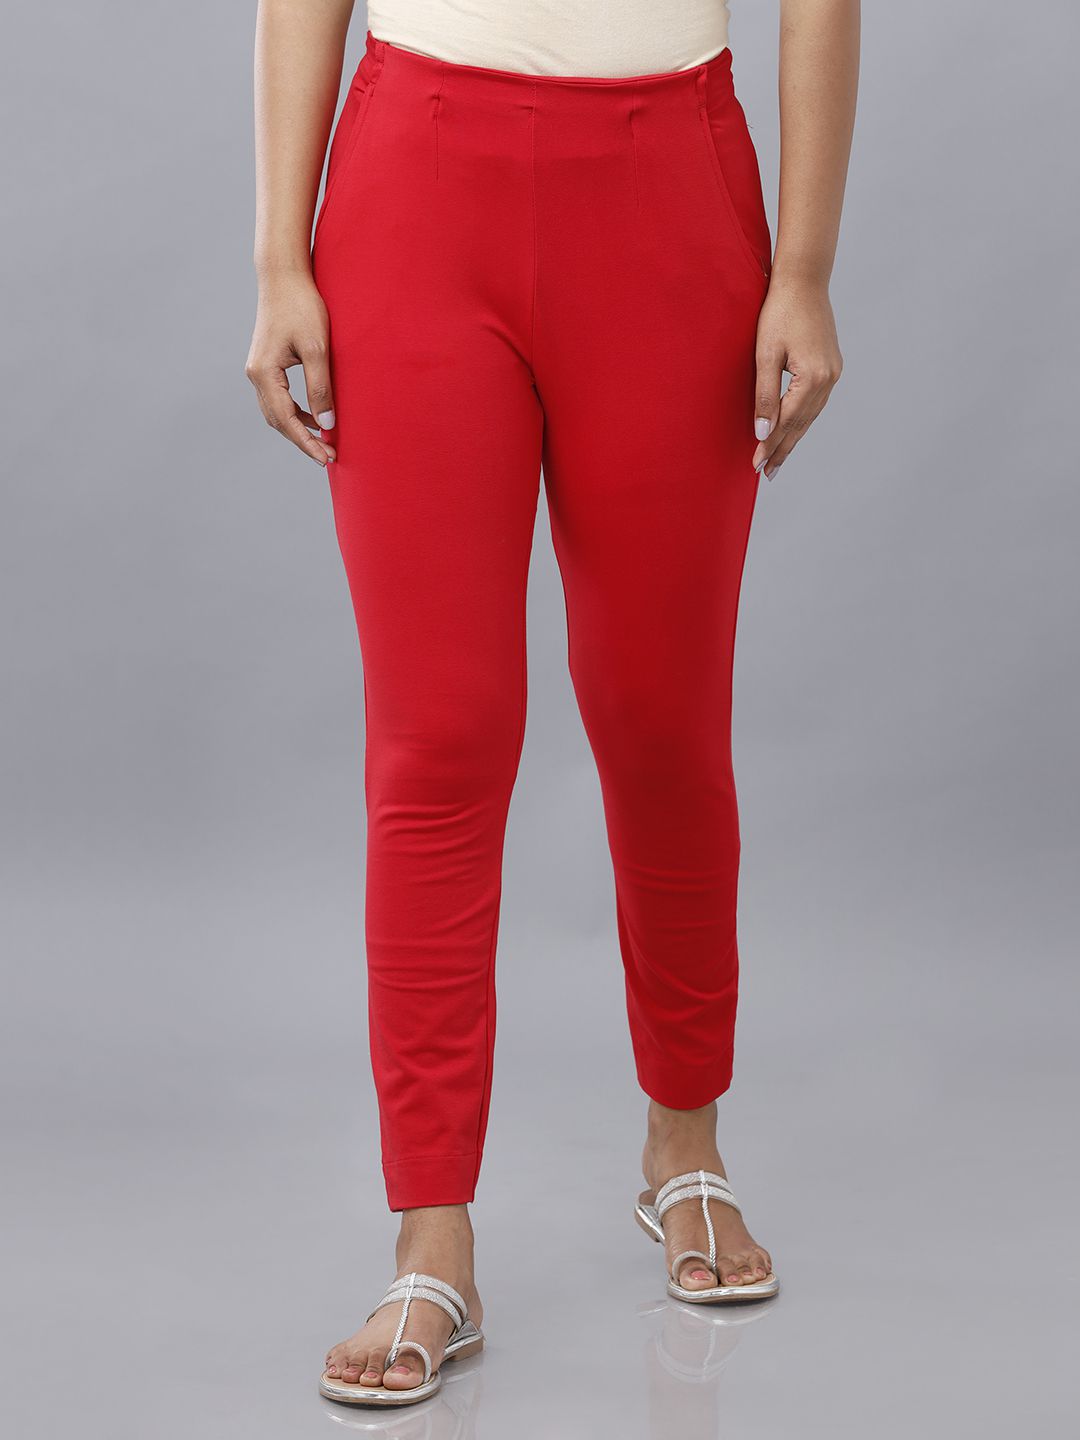     			De Moza - Red Cotton Slim Women's Cigarette Pants ( Pack of 1 )